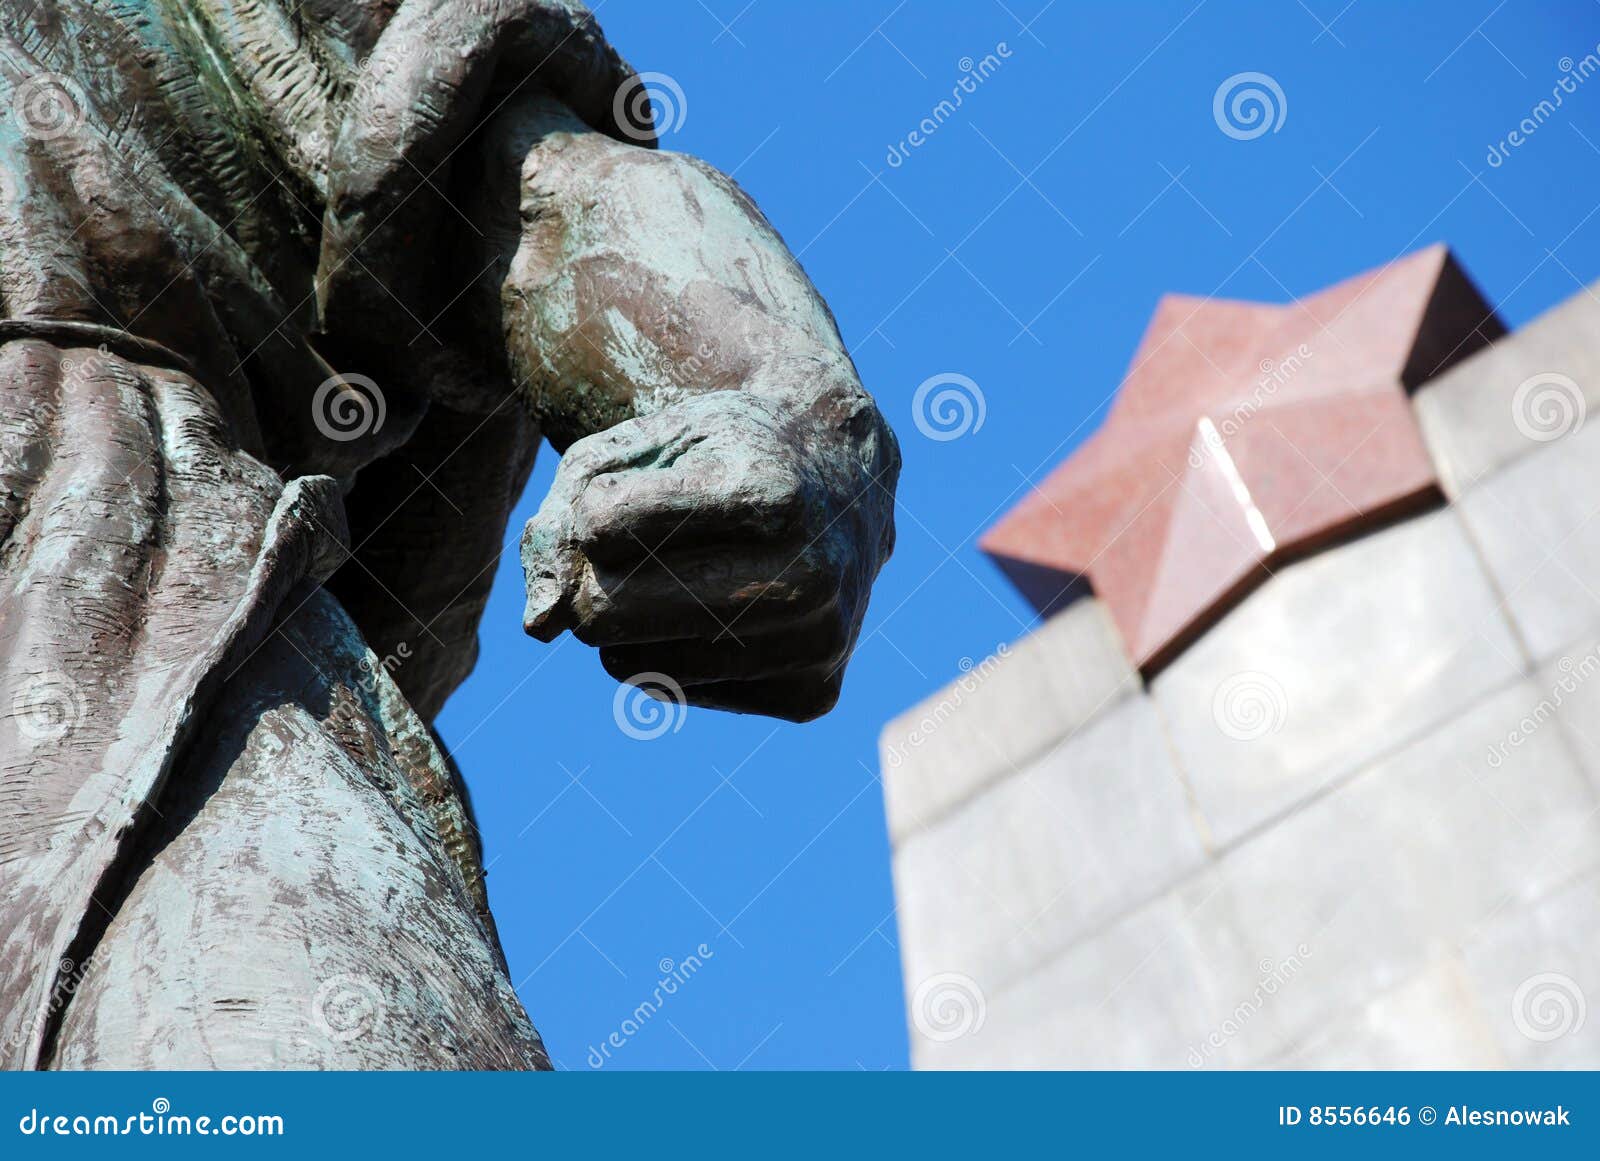 communism statue